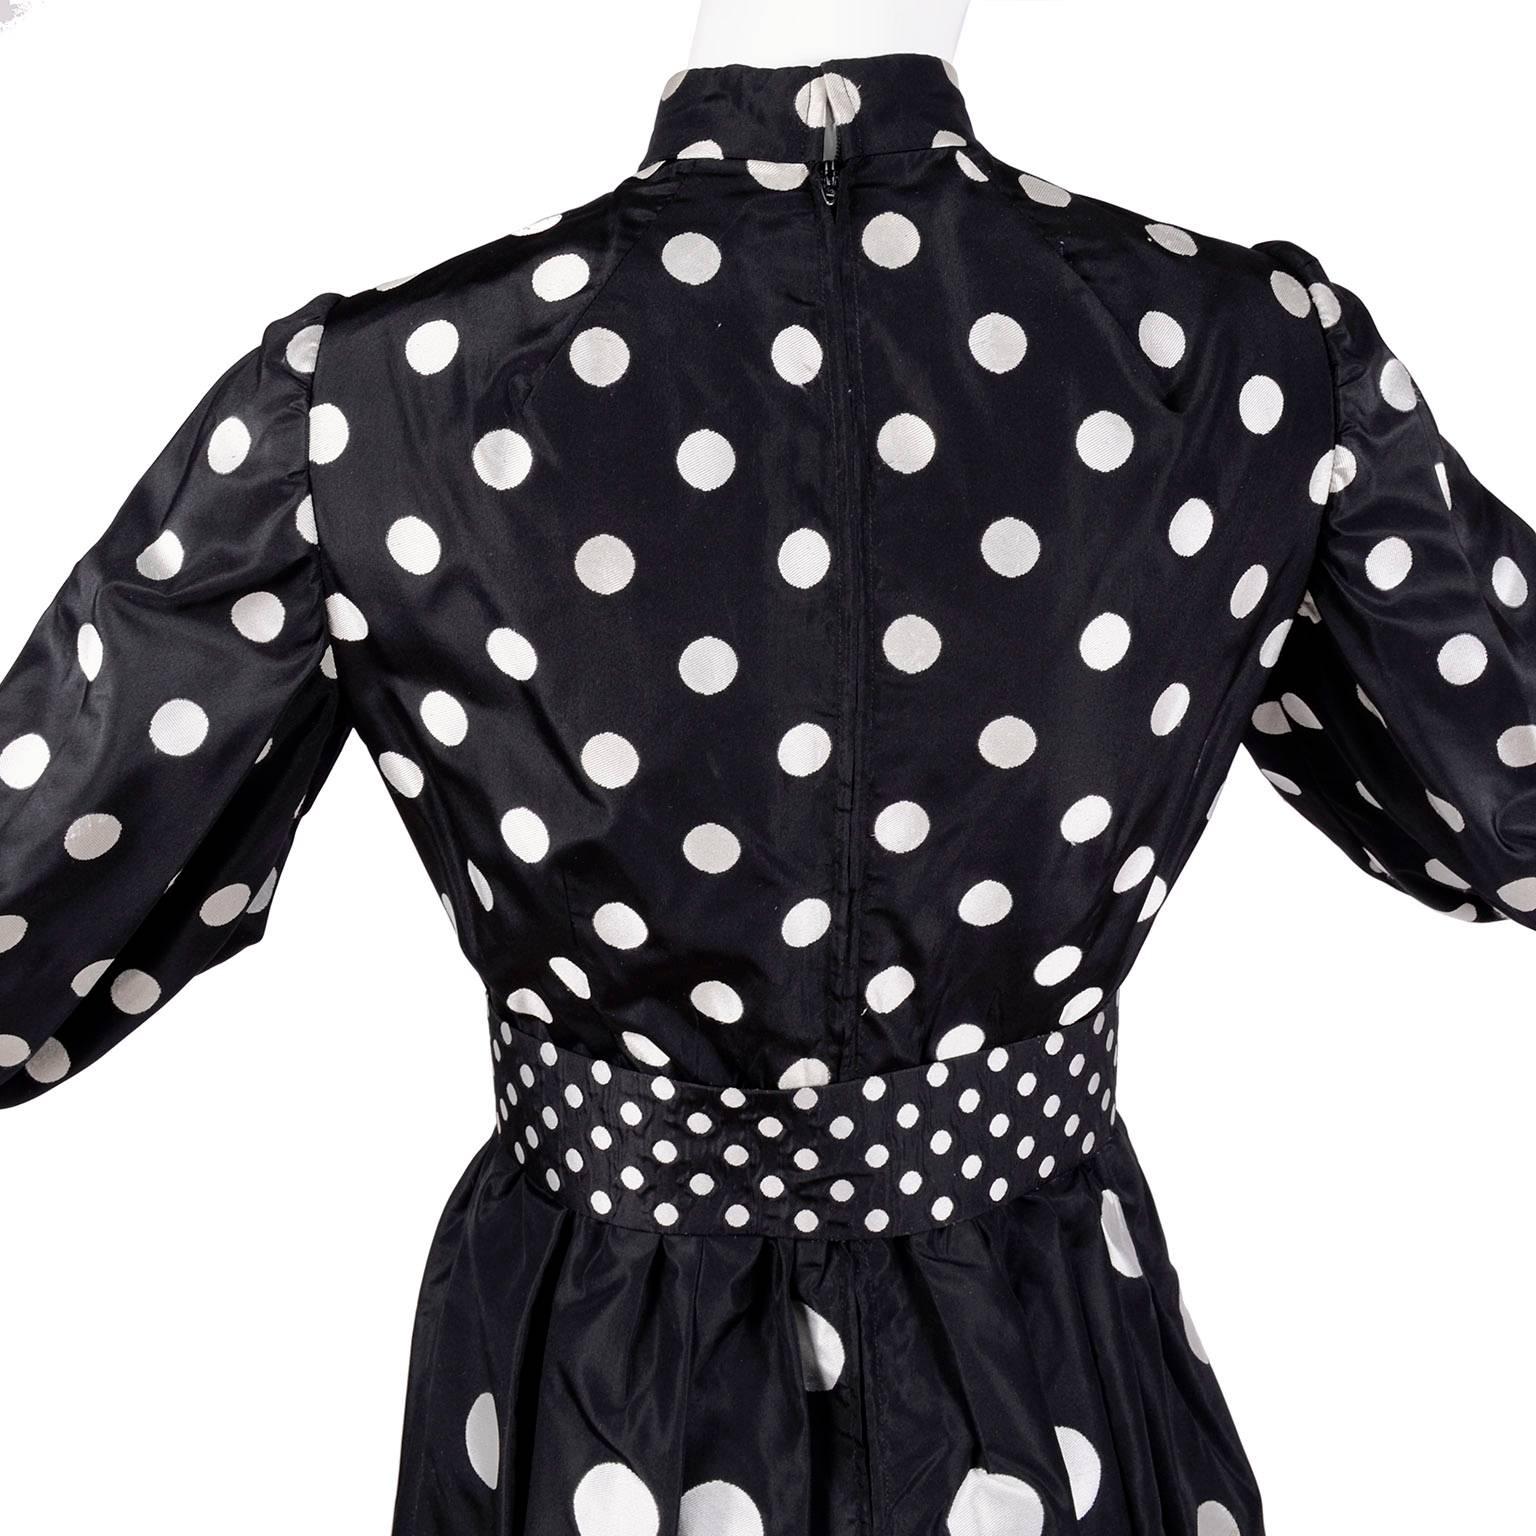 Women's 1960s Norman Norell Vintage Dress in Black Taffeta W/ Polka Dots w/ Provenance